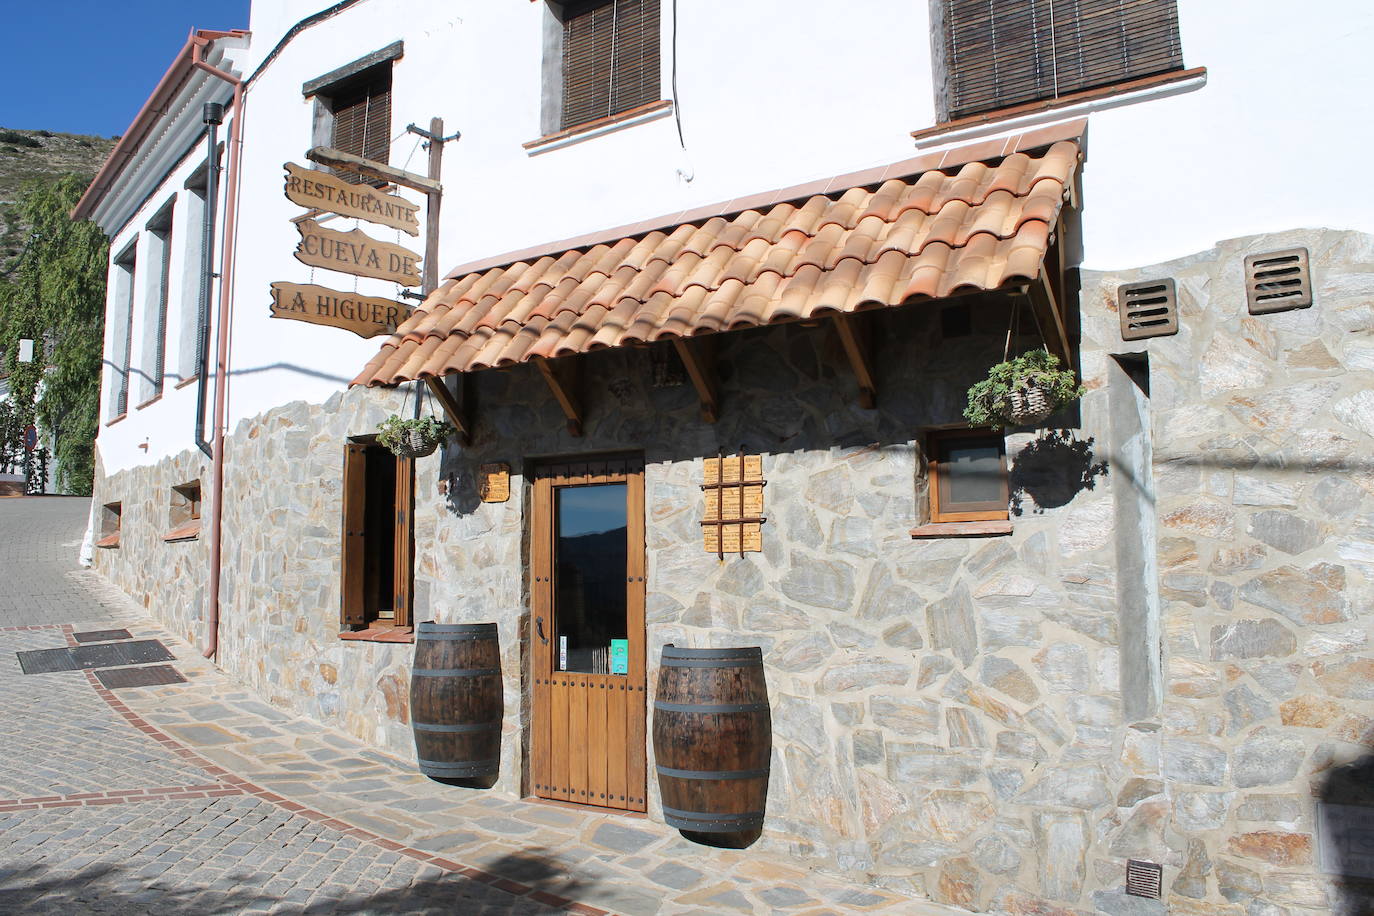 Restaurante Cueva de la Higuera